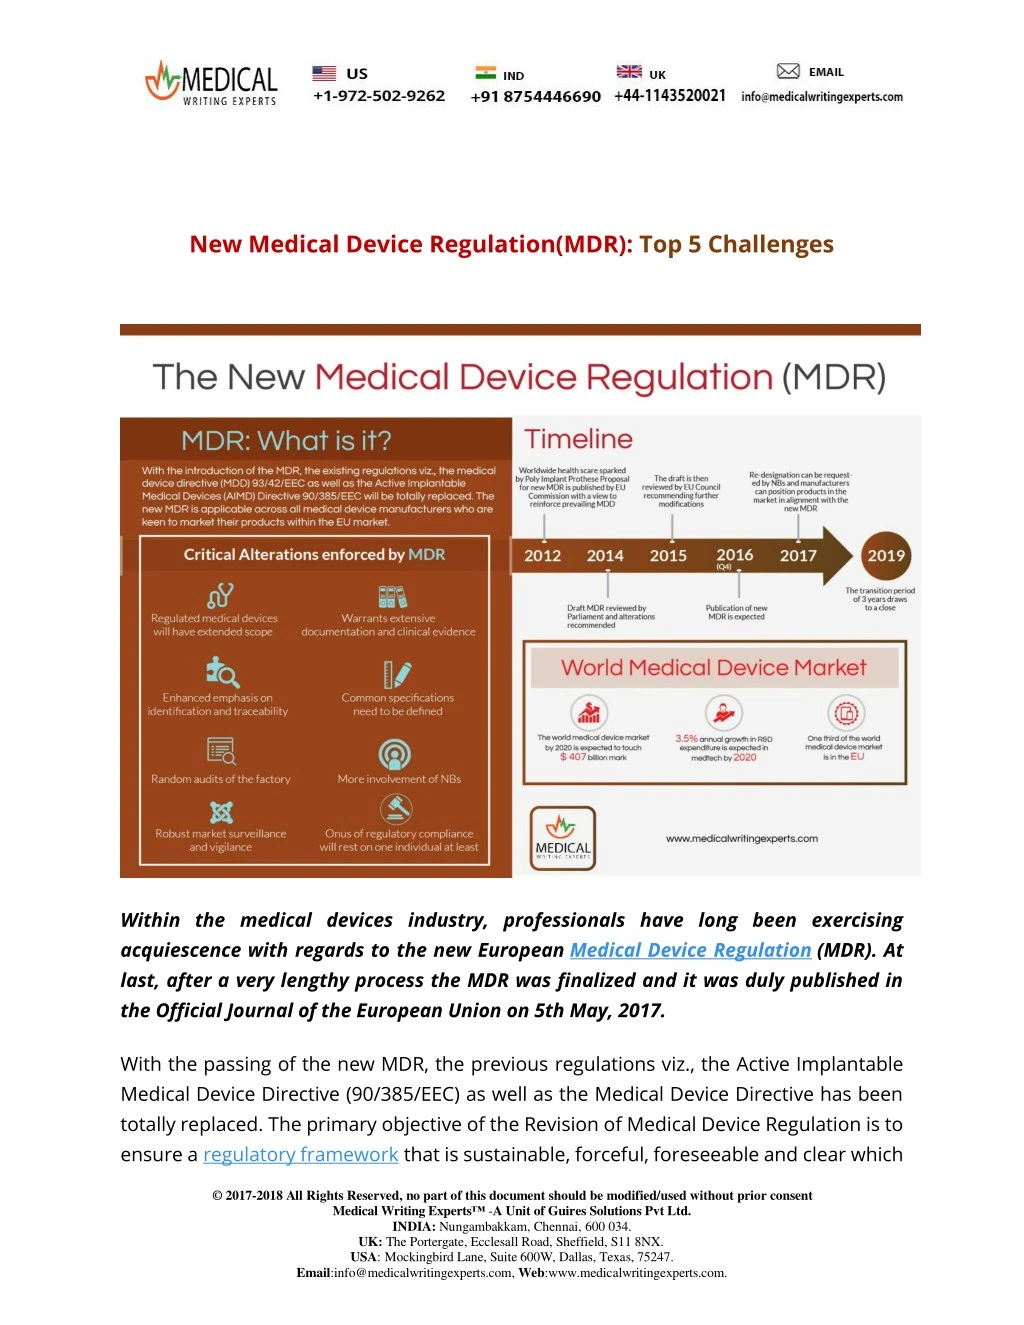 new medical device regulation mdr top 5 challenges